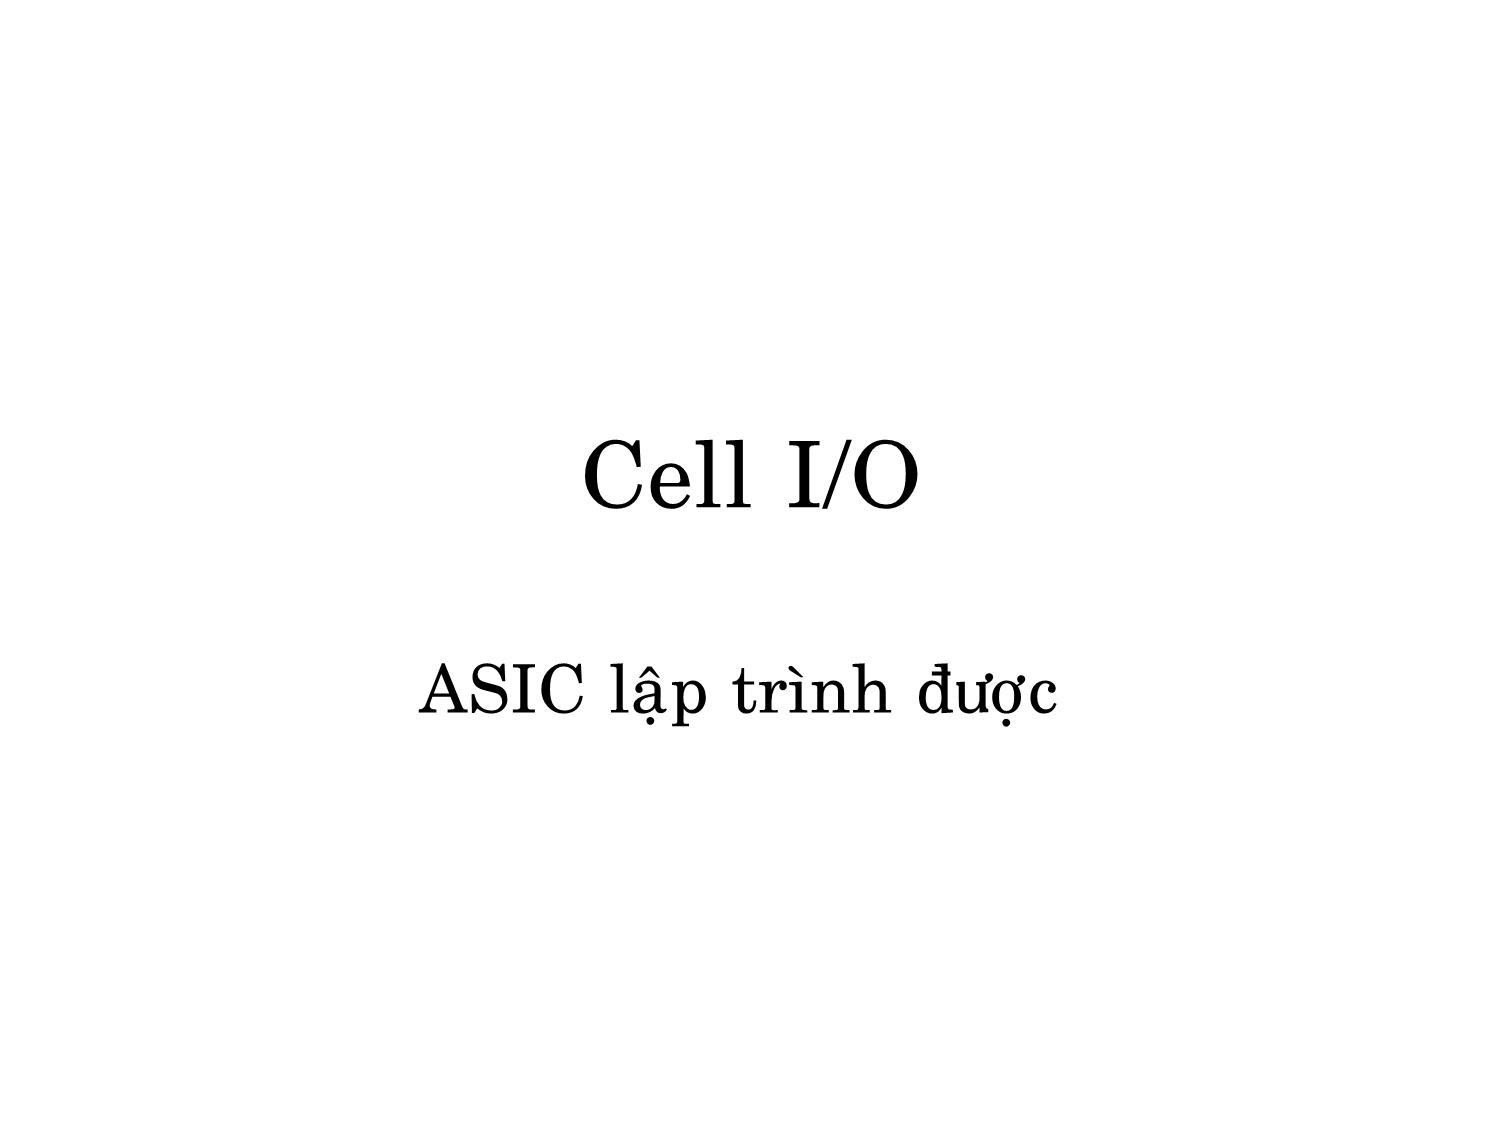 Cell I/O ASIC lập trình được trang 1